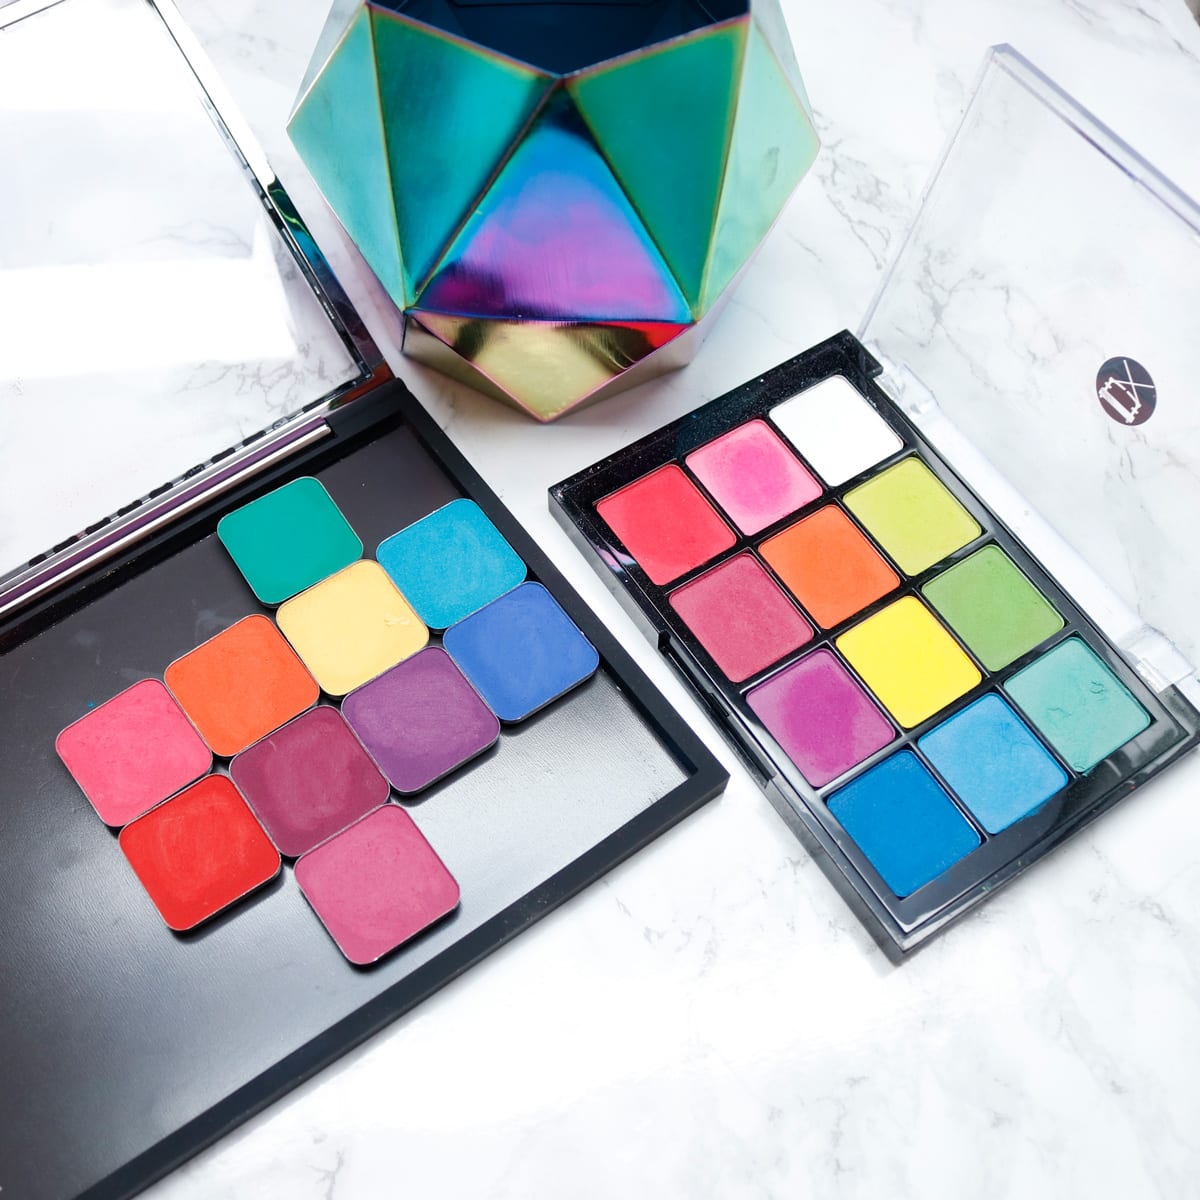 Makeup Geek Power Pigments vs Viseart Editorial Brights Palette